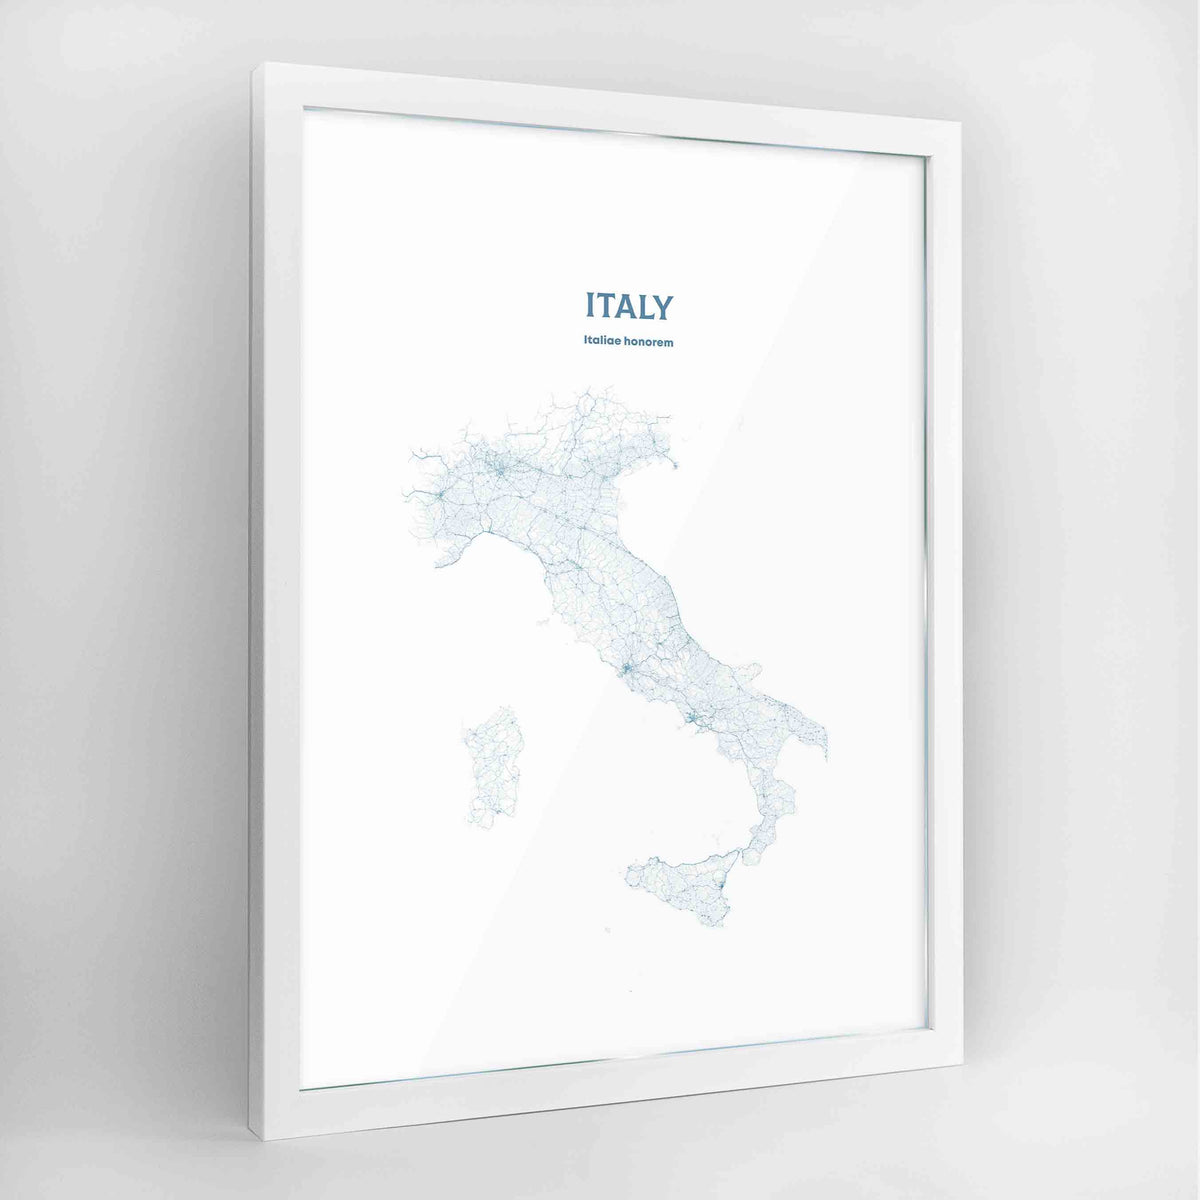 Italy - All Roads Art Print - Framed